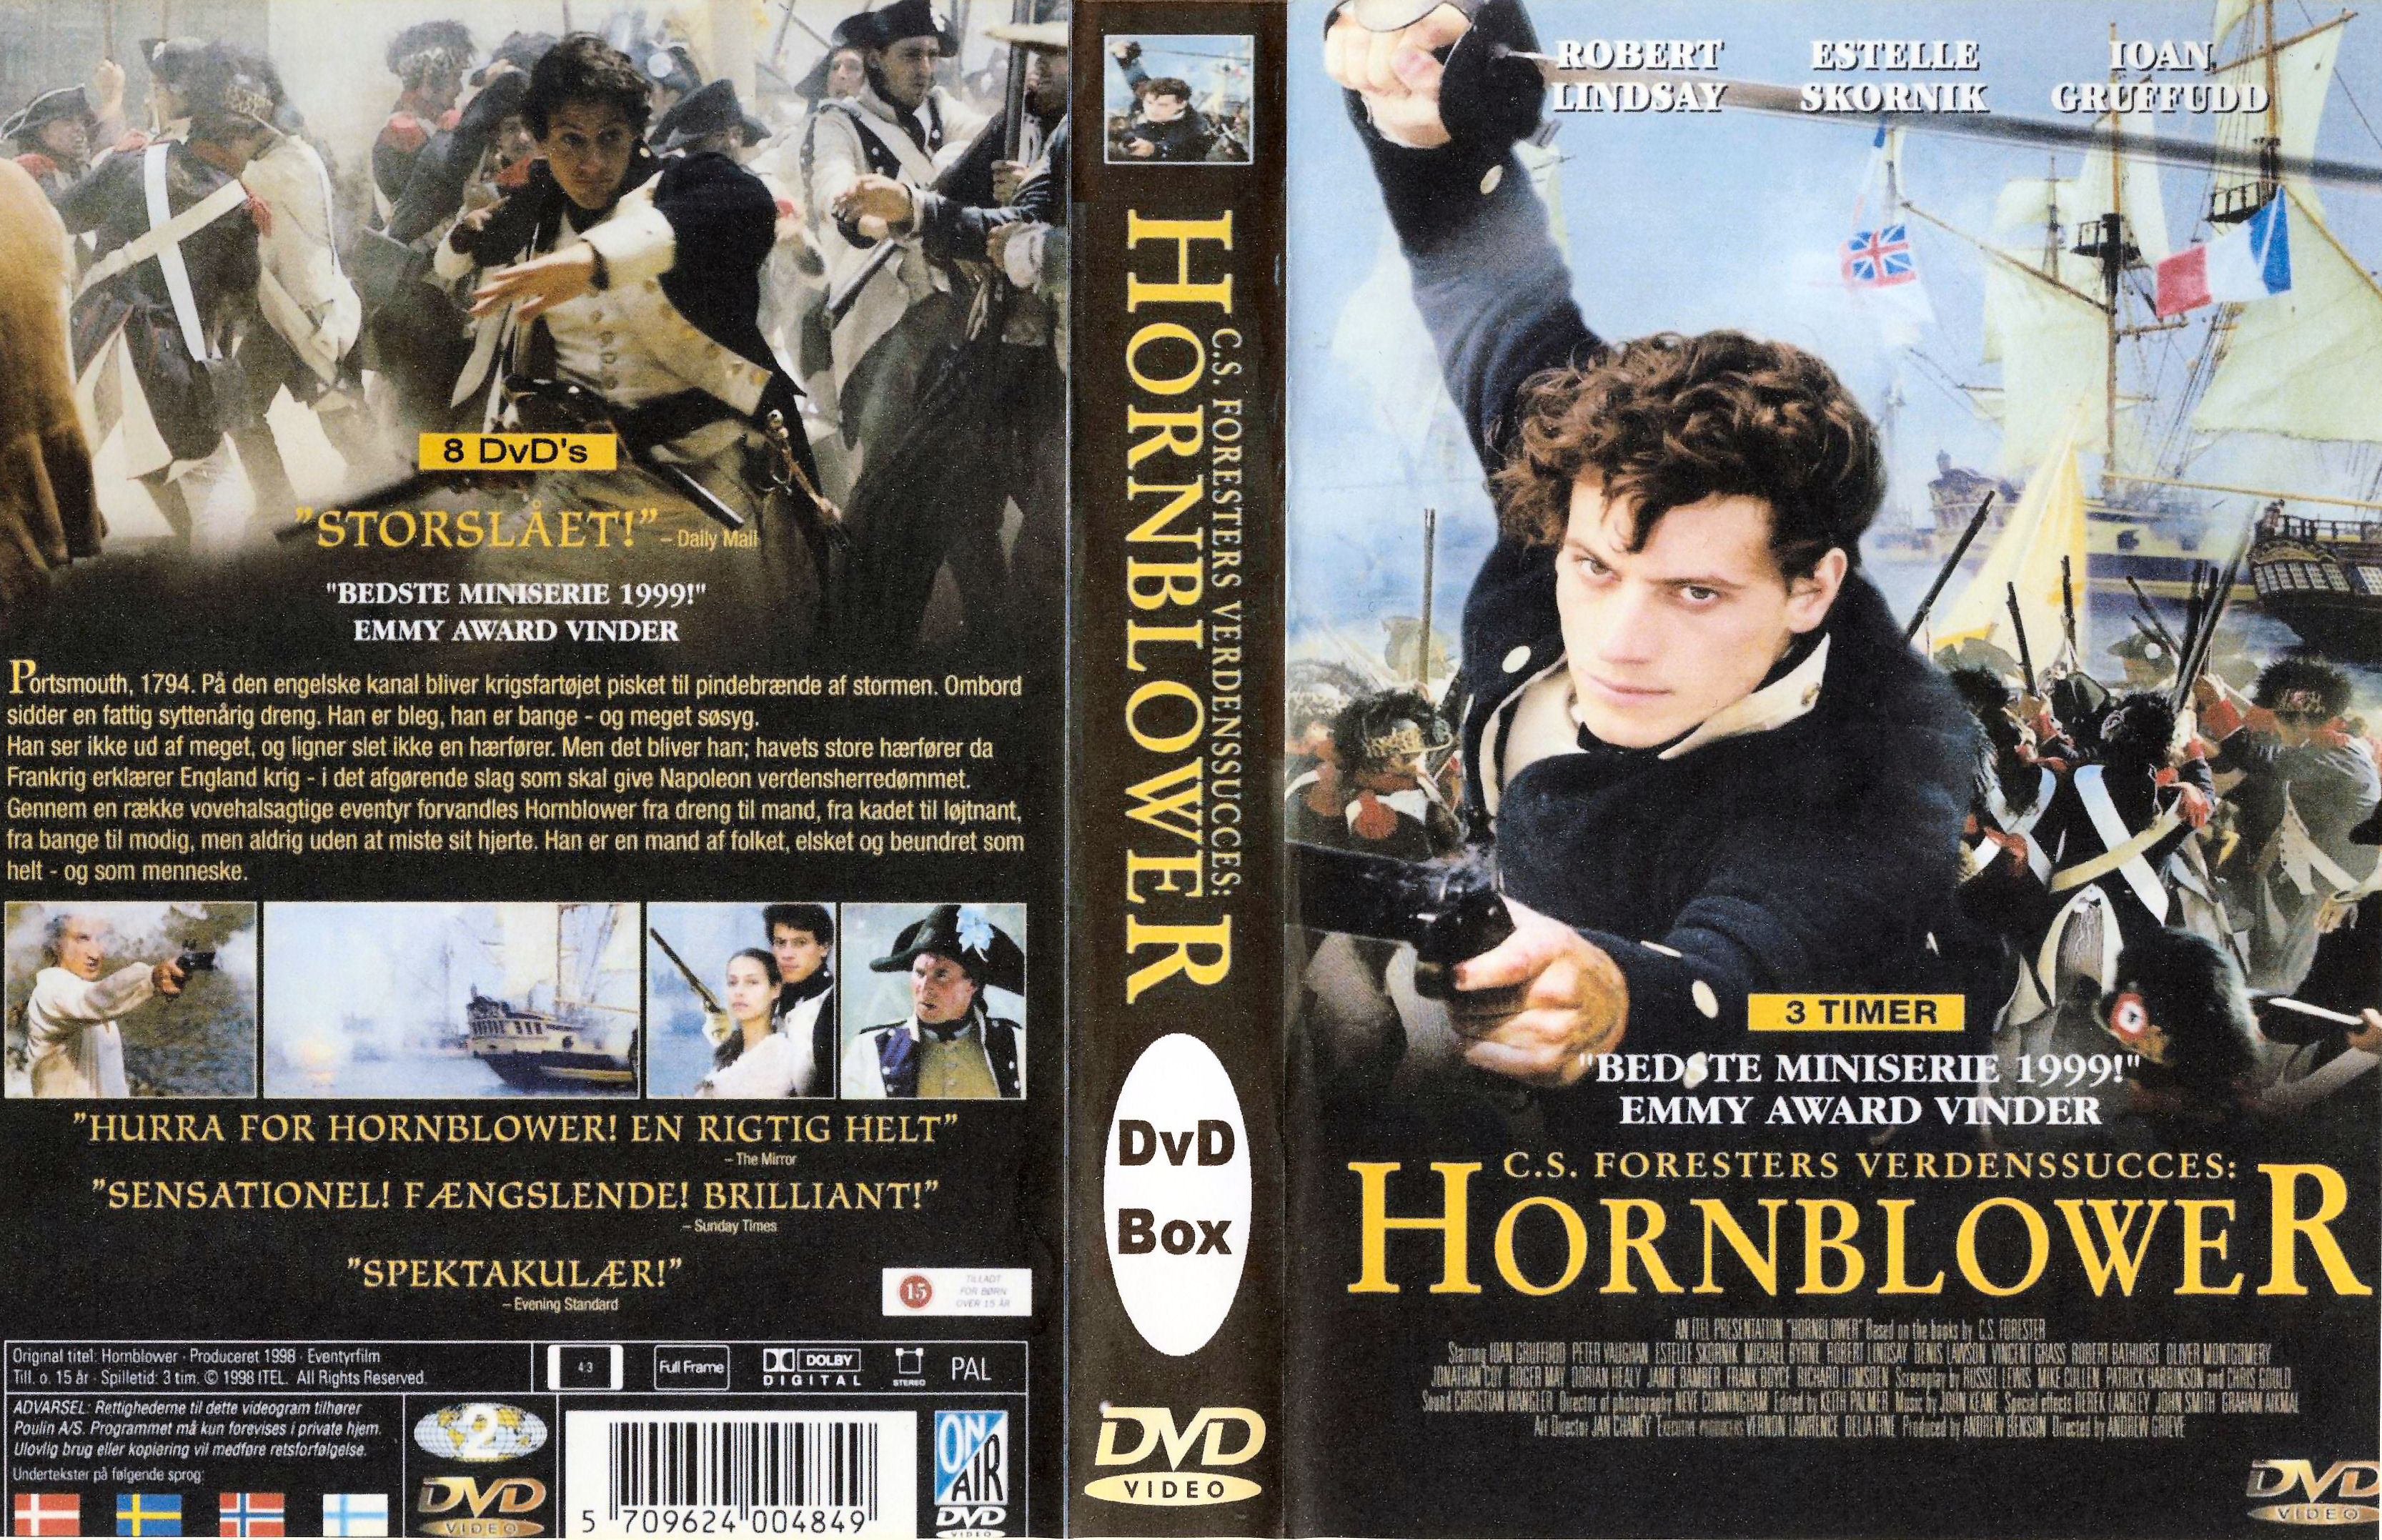 REPOST Hornblower Miniserie 1999 dvd 2